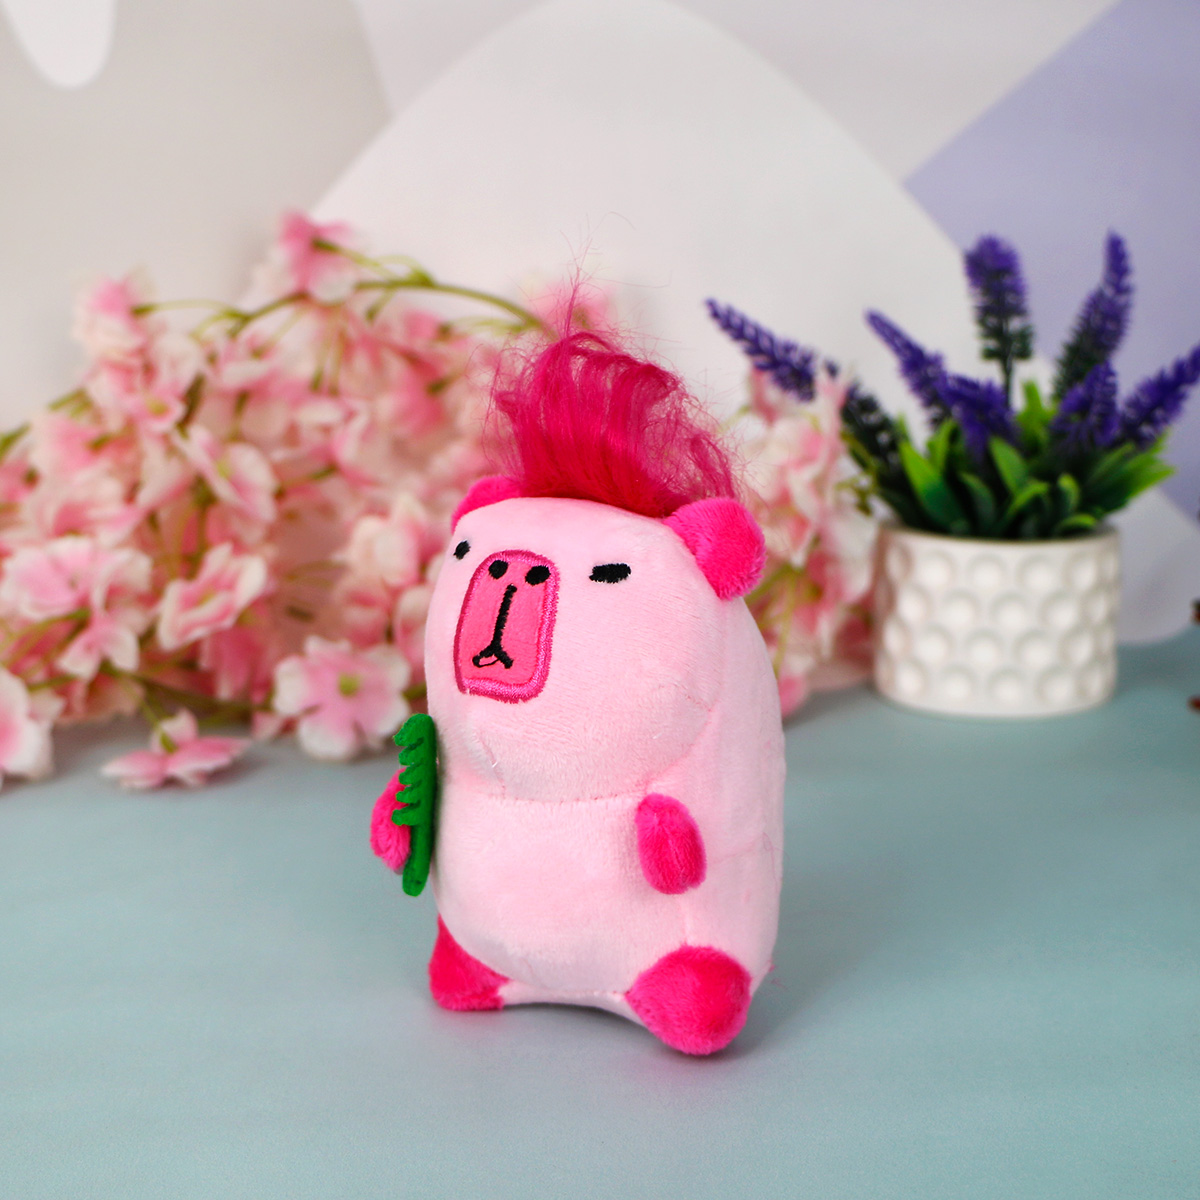 фото игрушки Брелок мягкий капибара волосатая с расчёской, 11 см (Розовый)